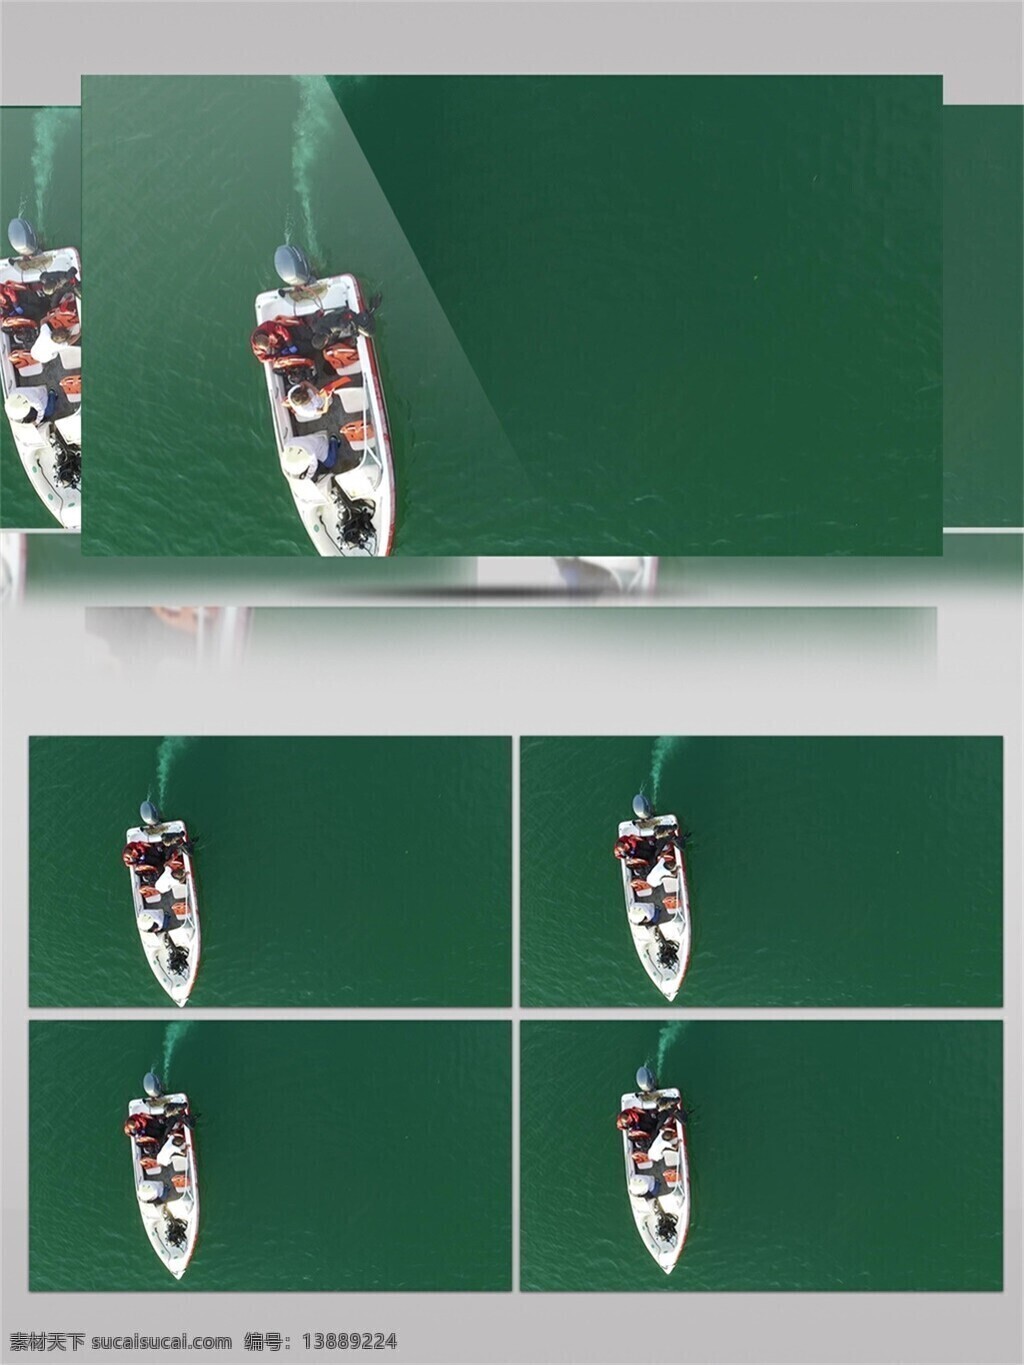 千岛湖 一日游 视频 音效 小船 视频素材 美景 杭州 旅游胜地 湖水 翡翠绿 视频音效